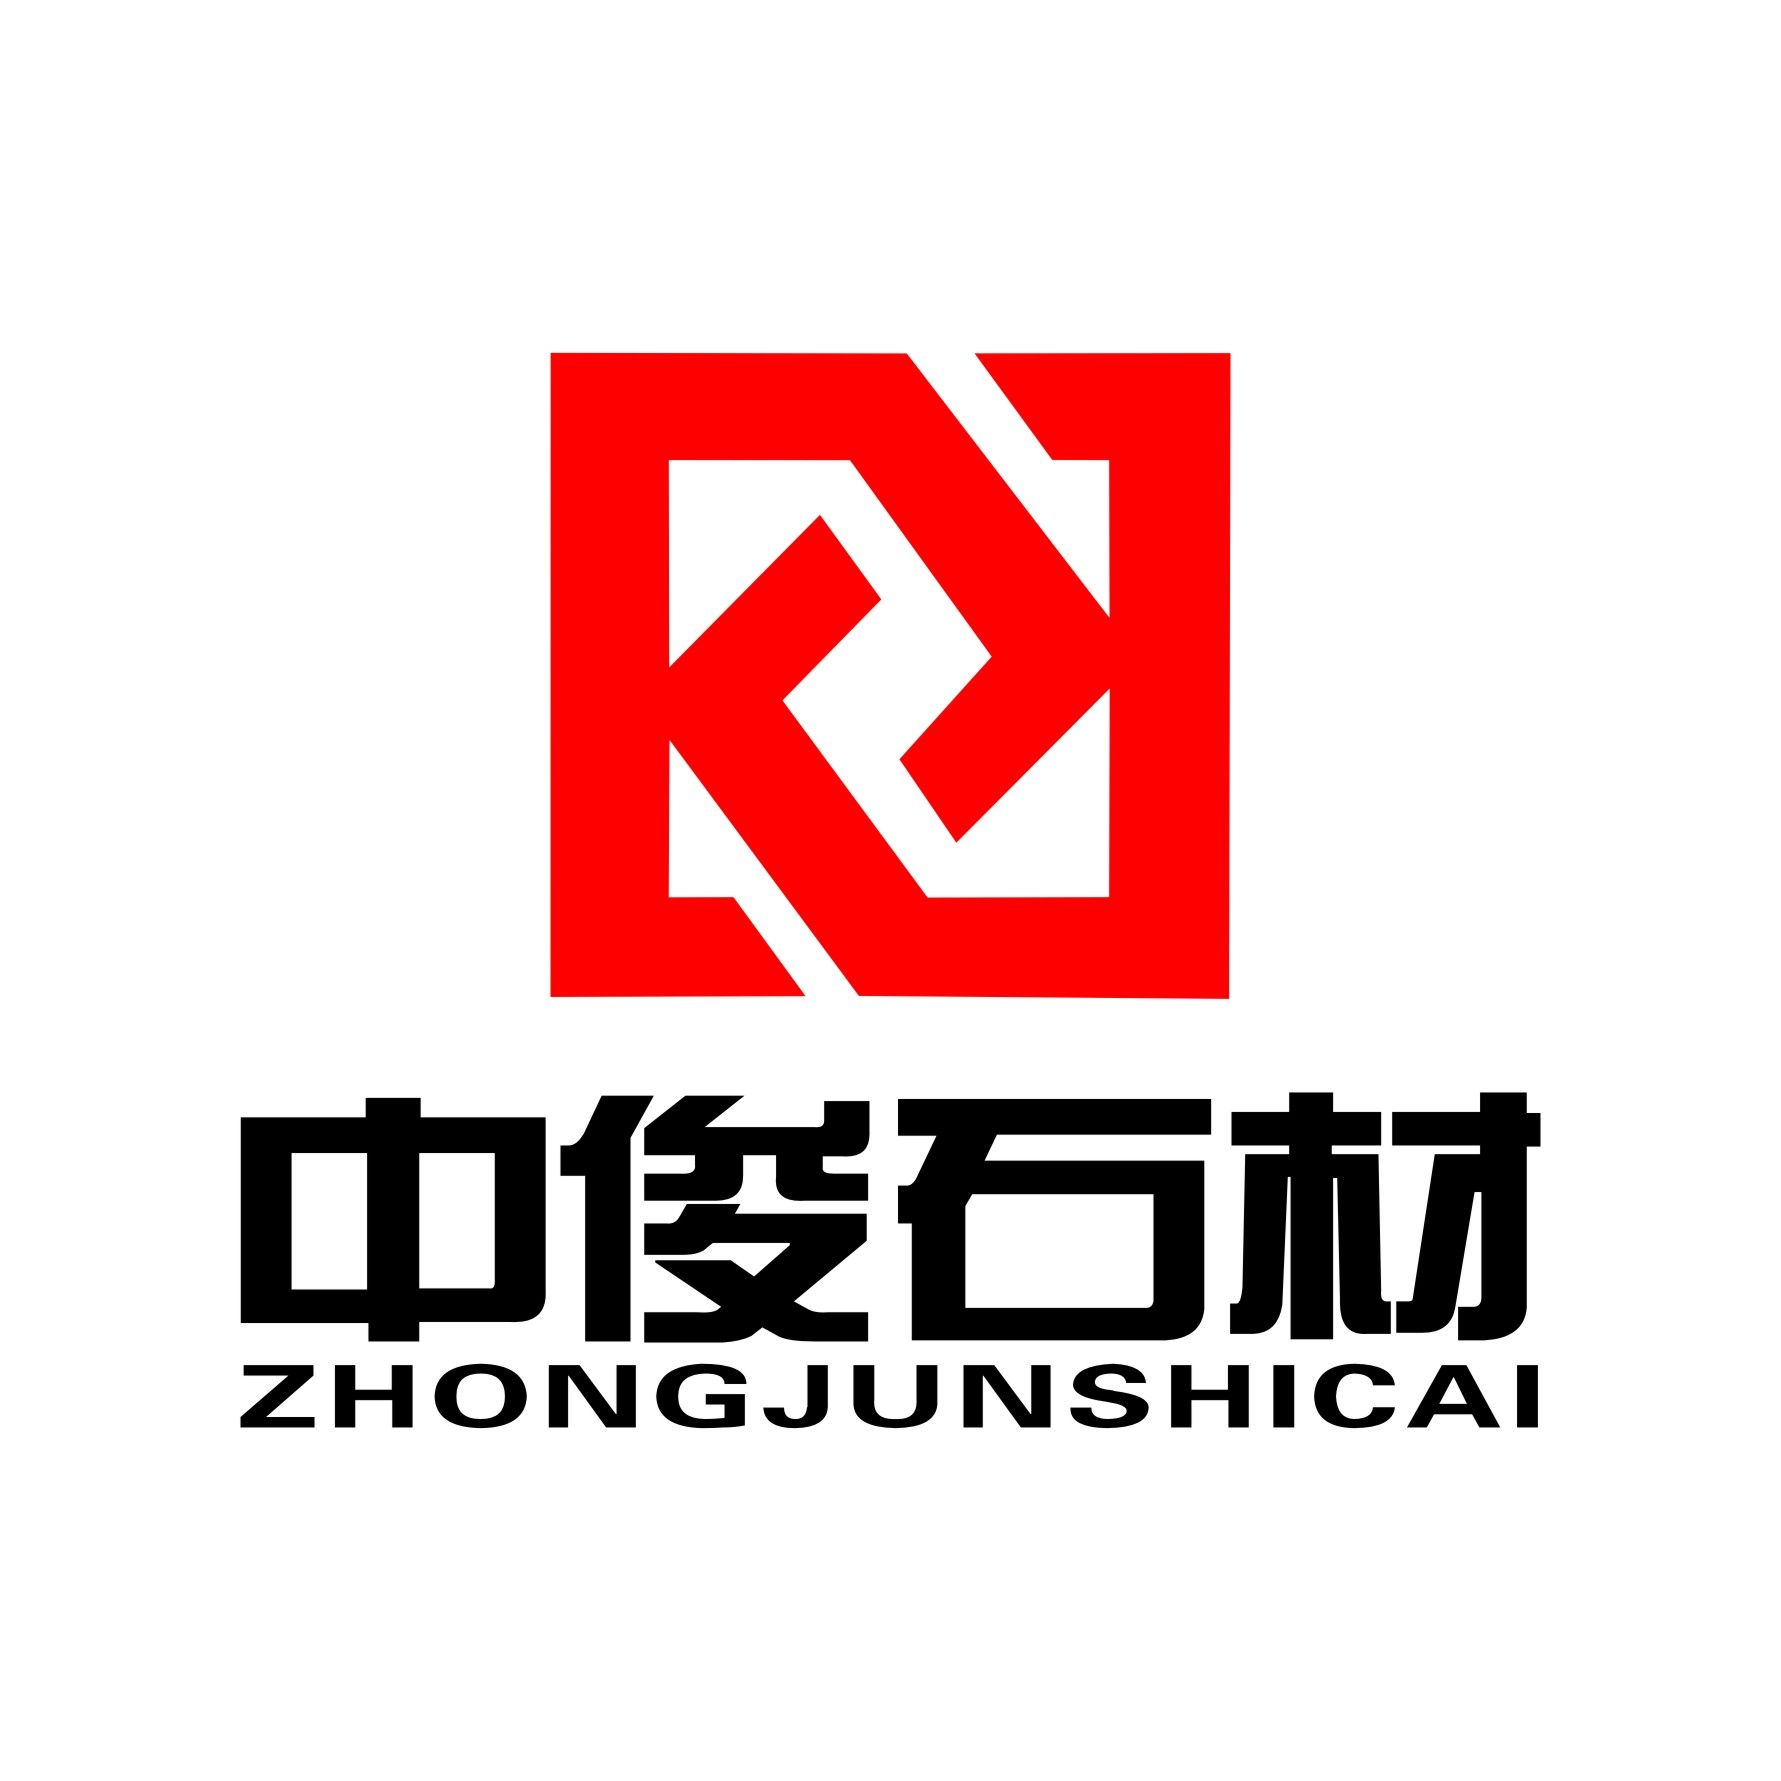 Liuzhou Zhongjun stoneco.,ltd